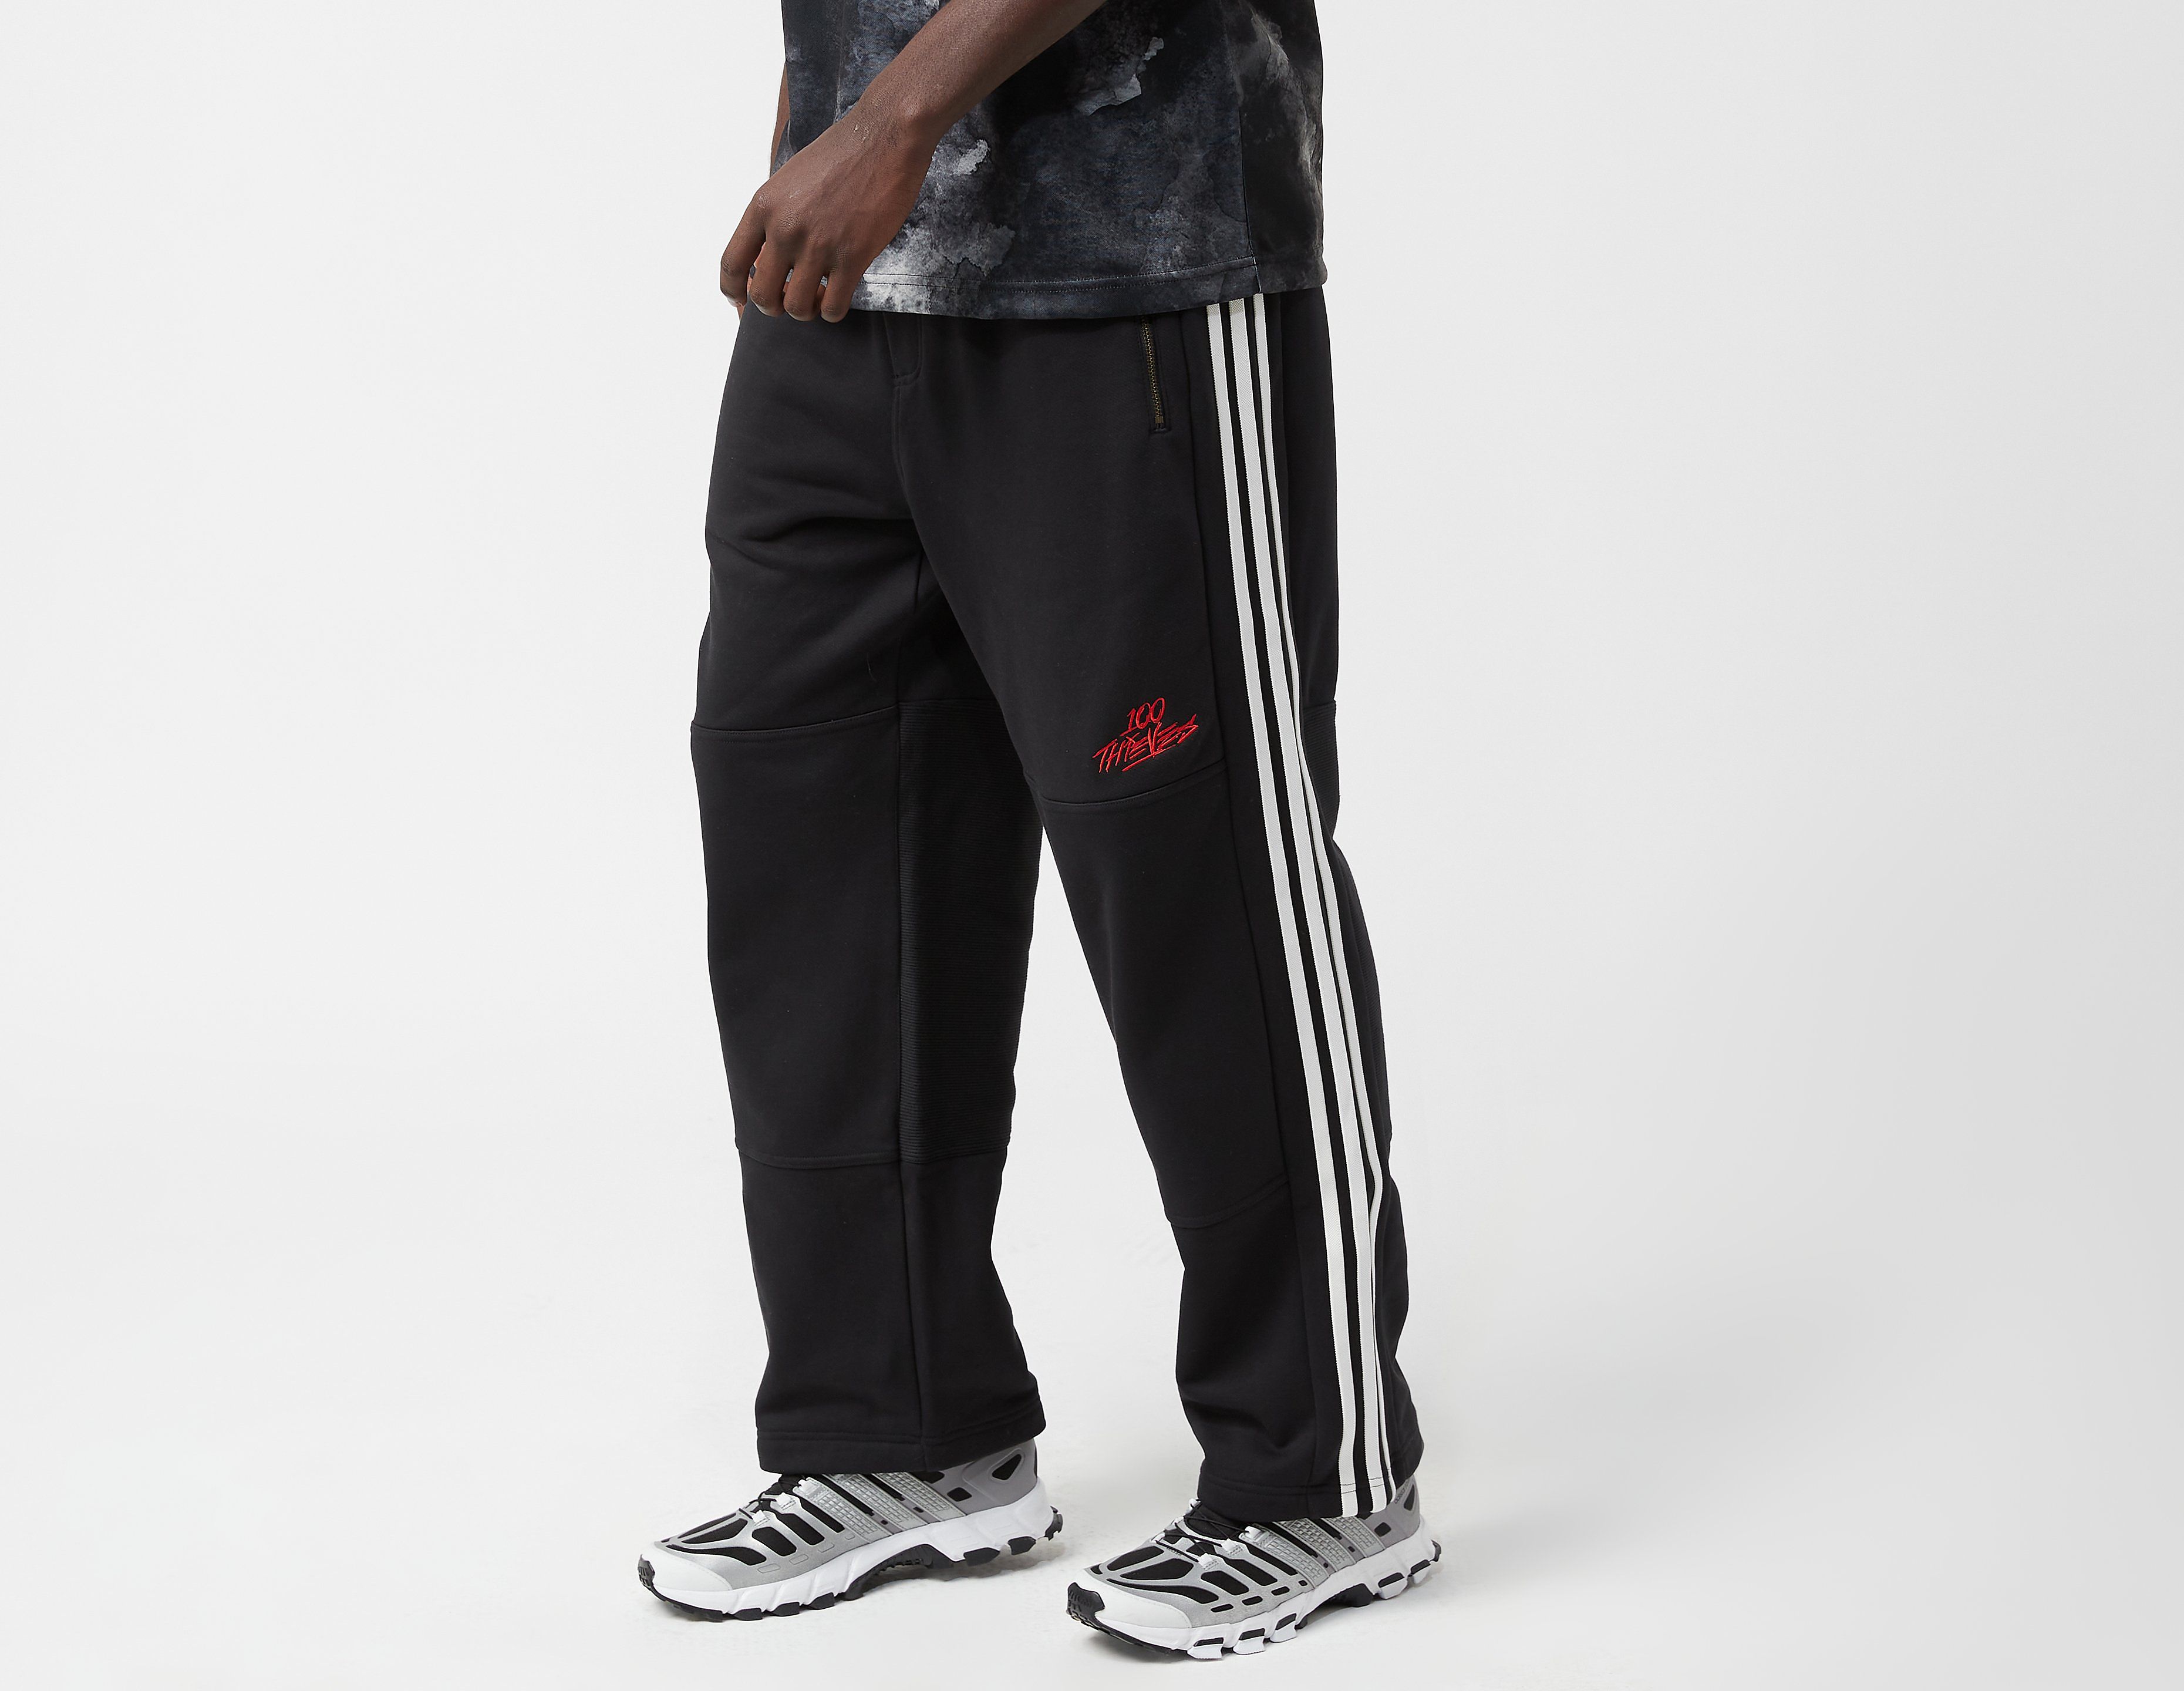 Adidas Originals x 100 Thieves Pants, Black